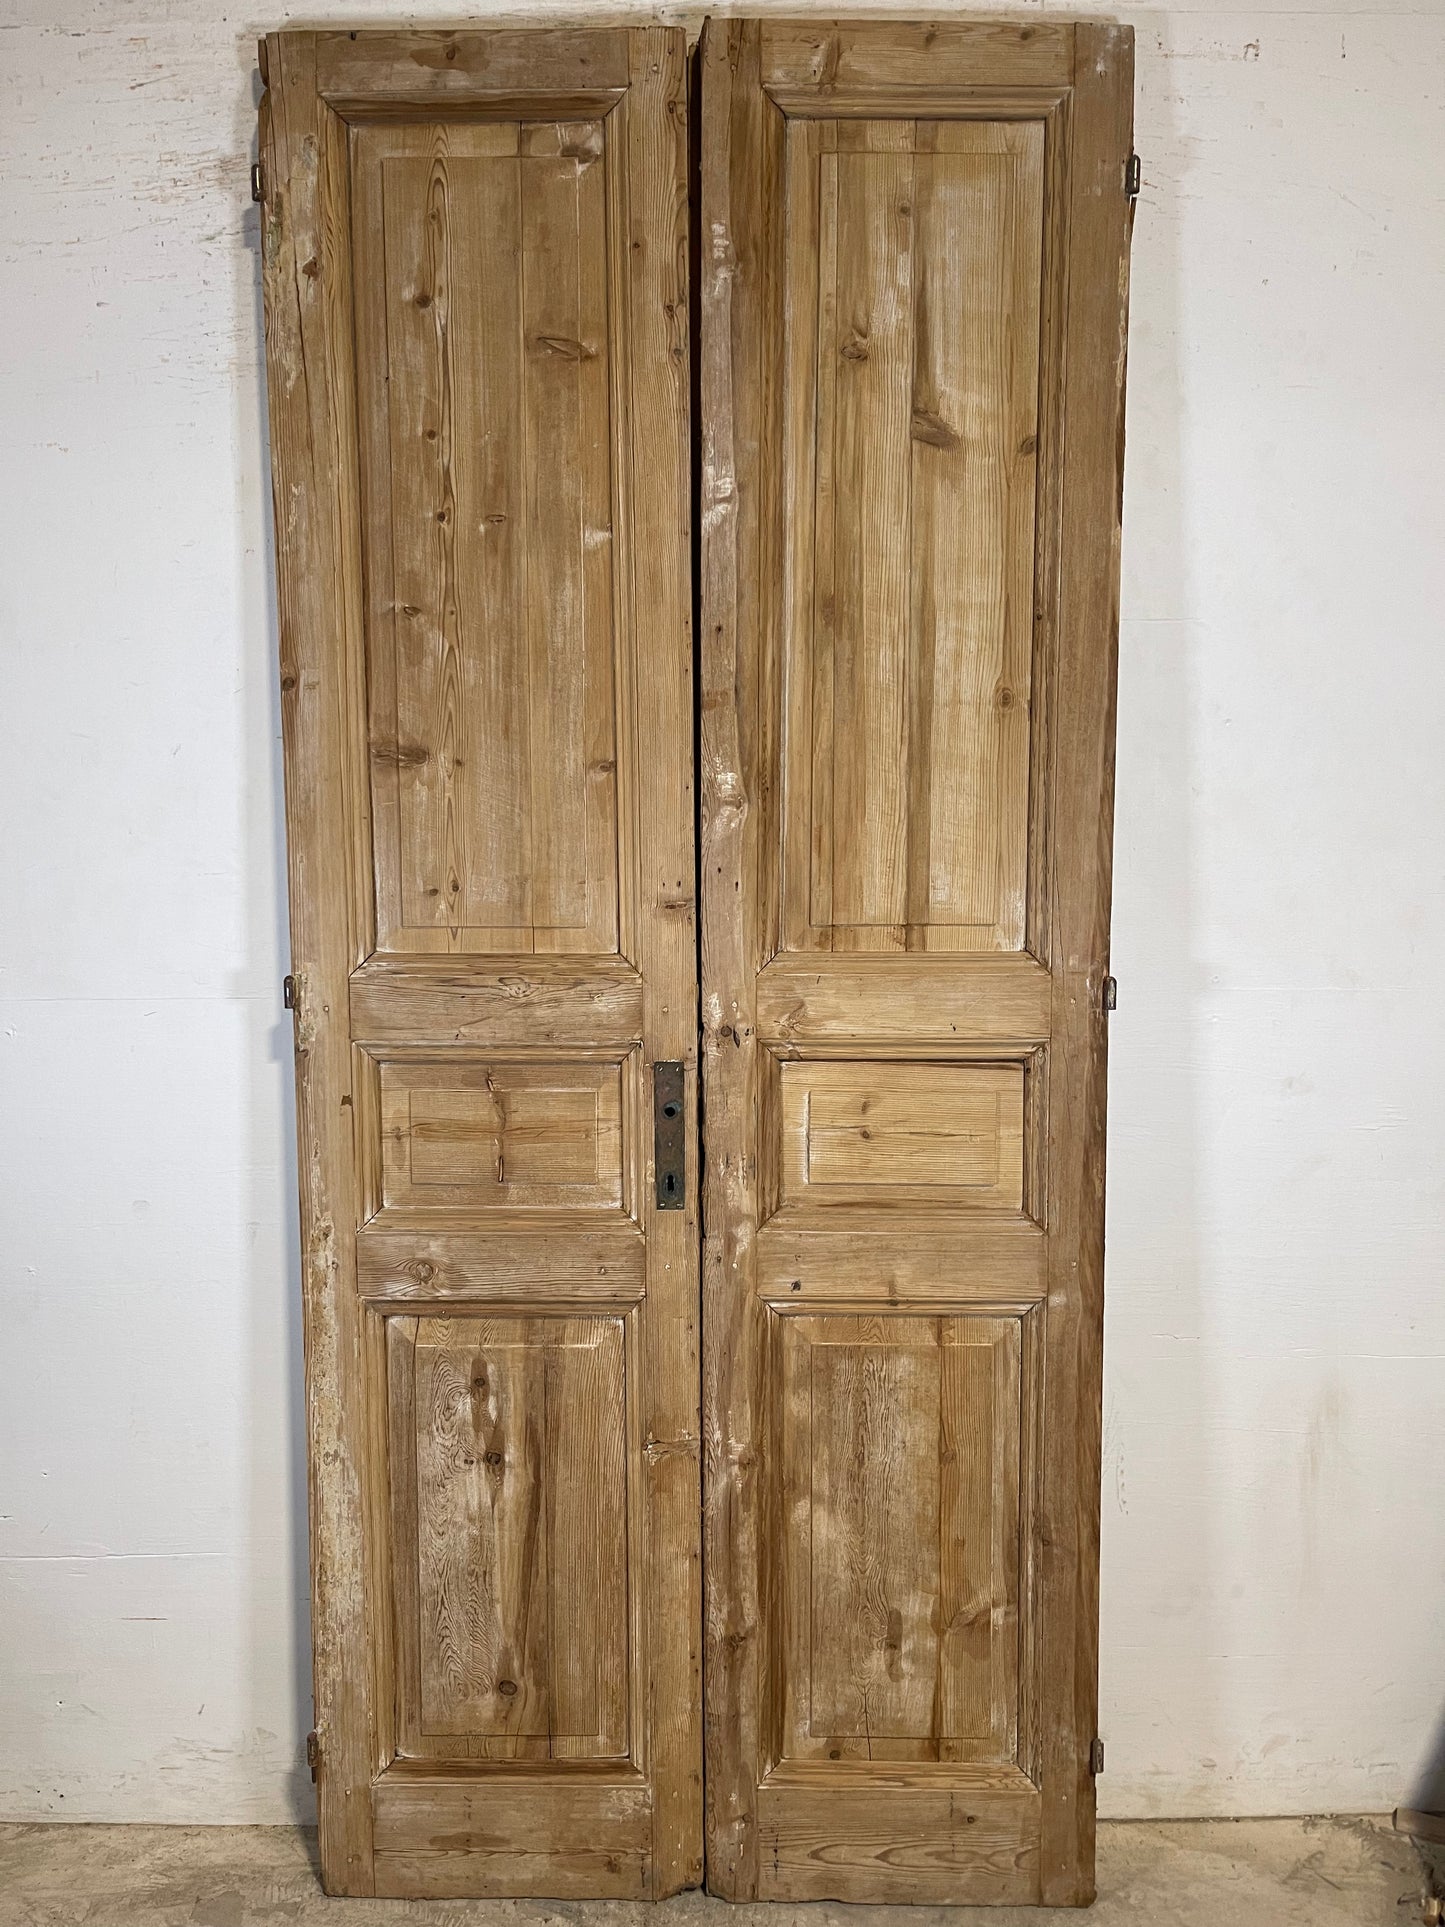 Antique French panel Doors (94.75x41.5) K724